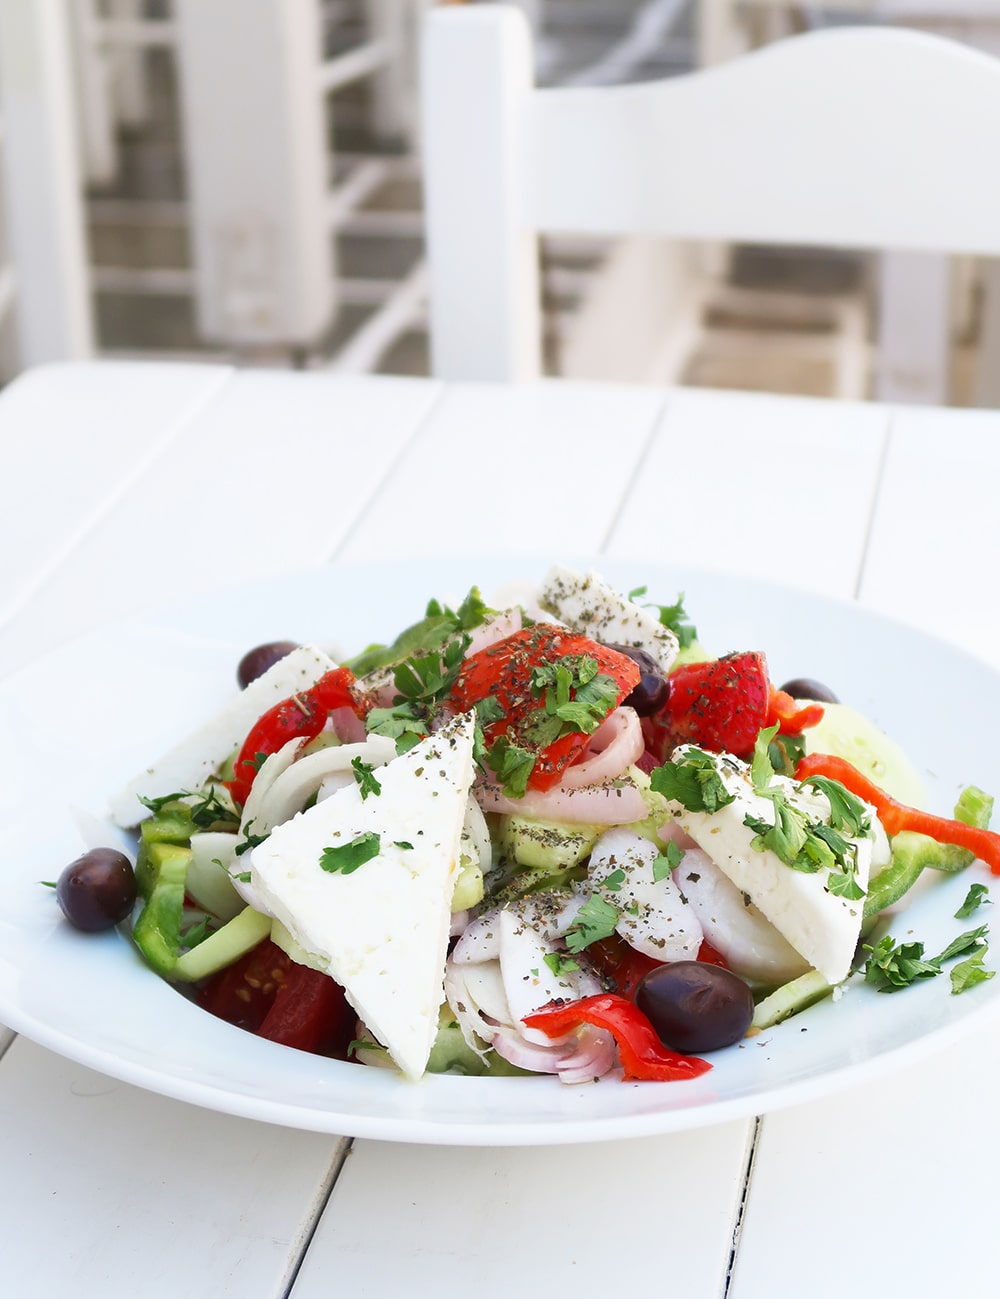 antiparros salade grecque grece